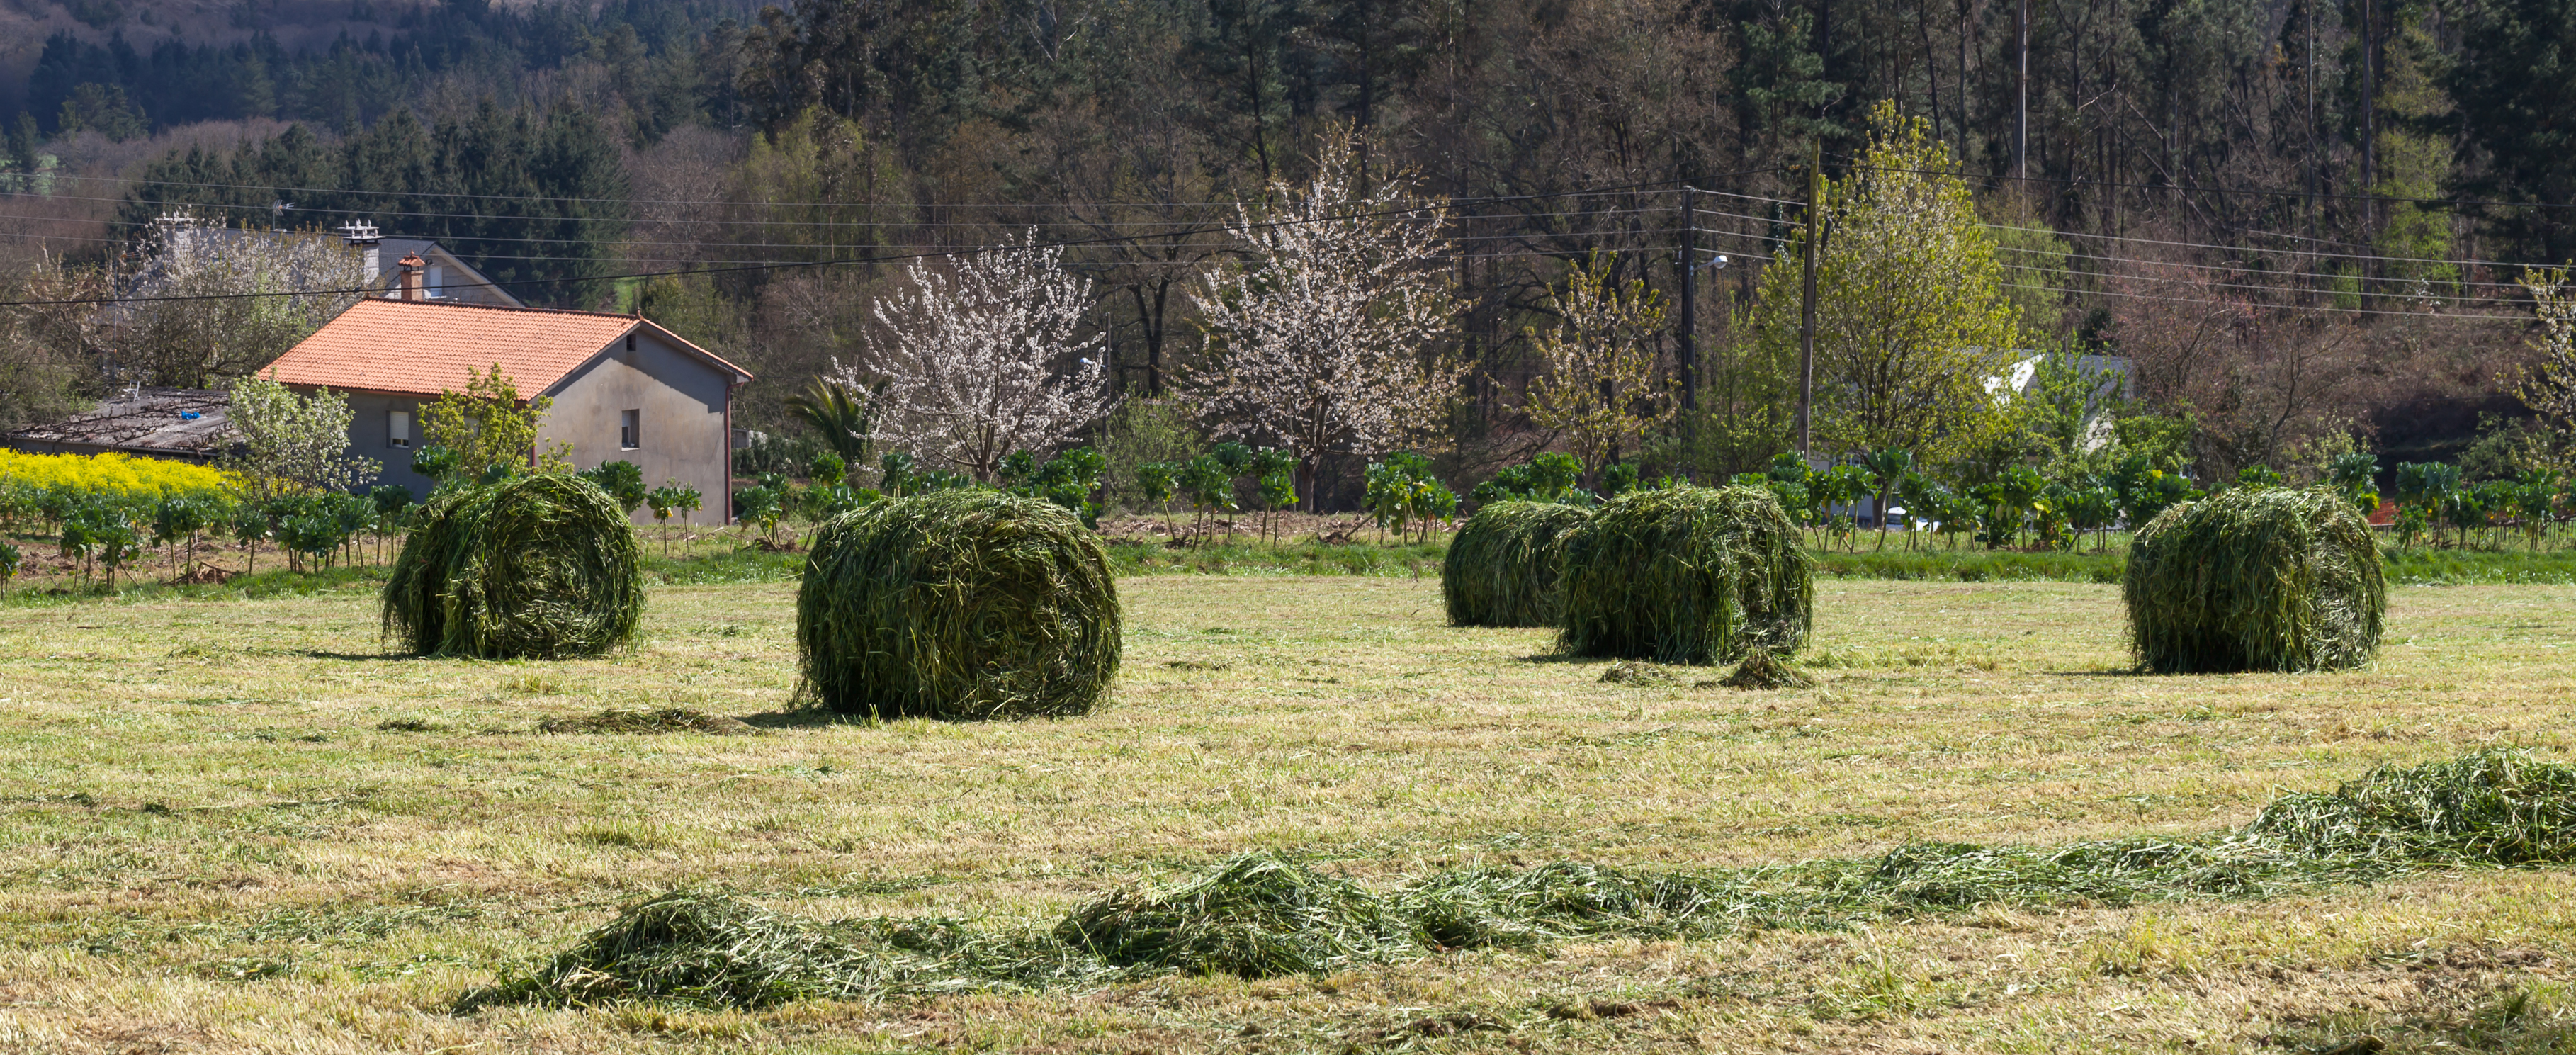 Rolos de herba en Valverde